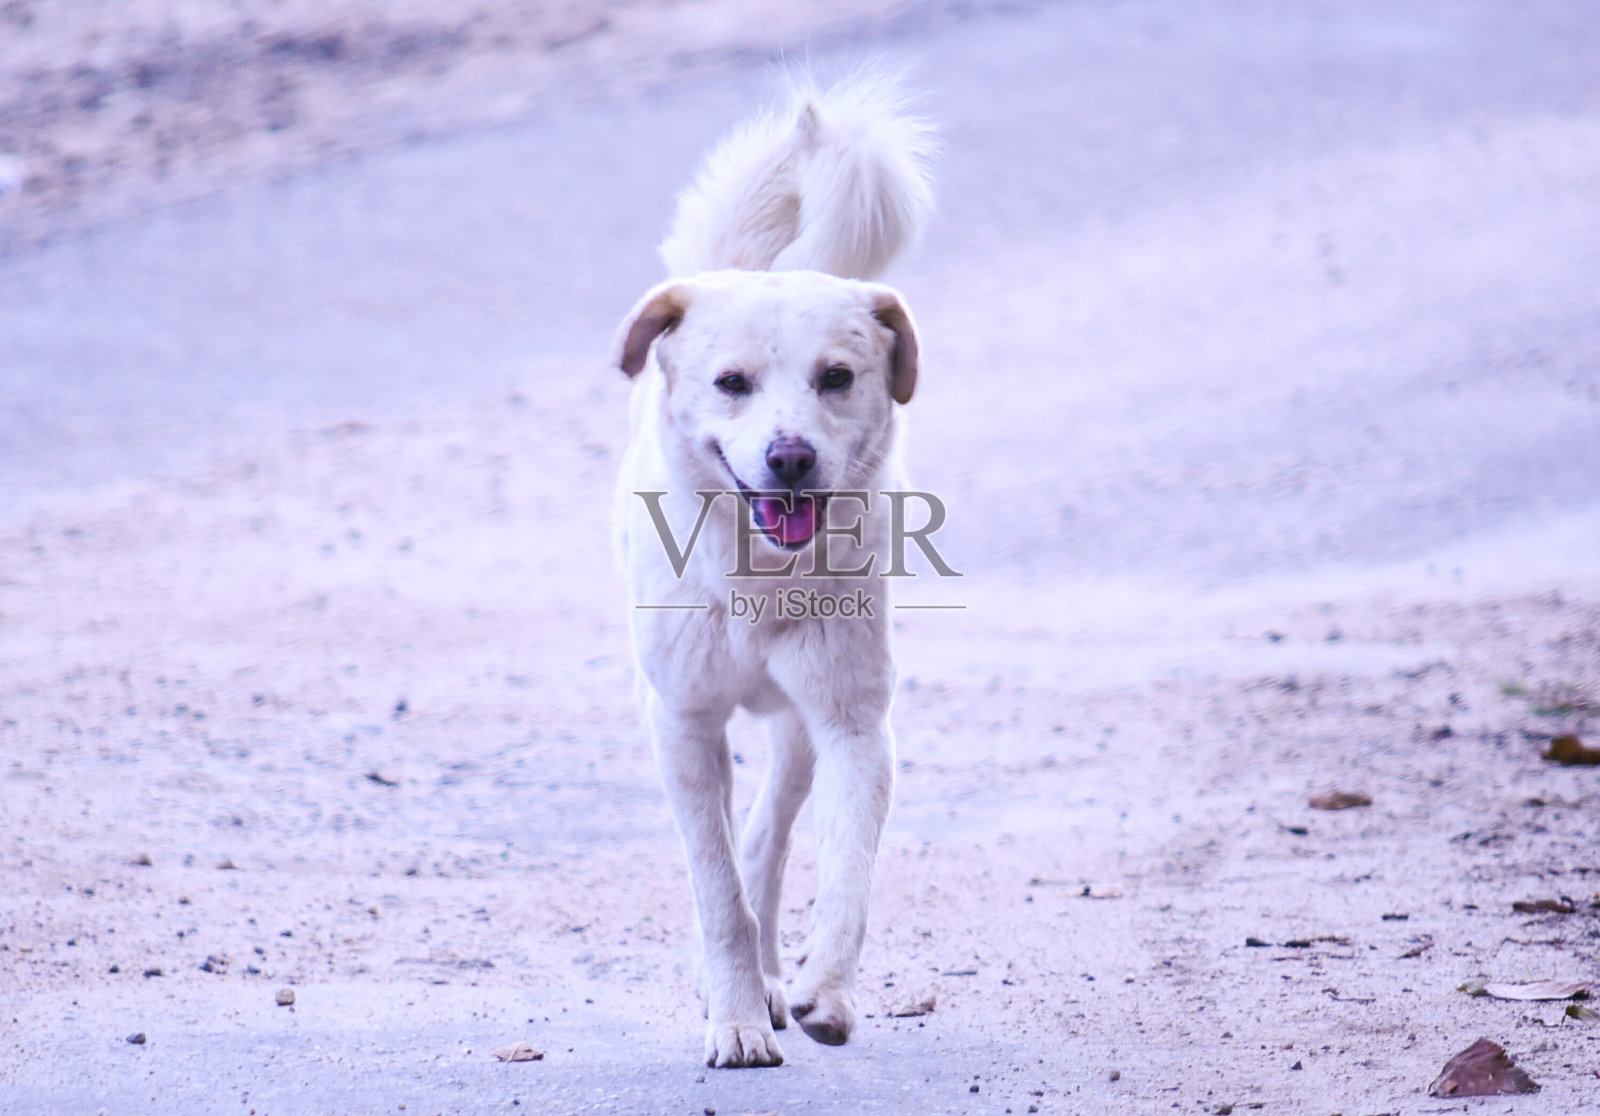 印度北部小镇Munsiyari的街道上，一只白色毛茸茸的黑眼睛狗兴高采烈地走在街上照片摄影图片